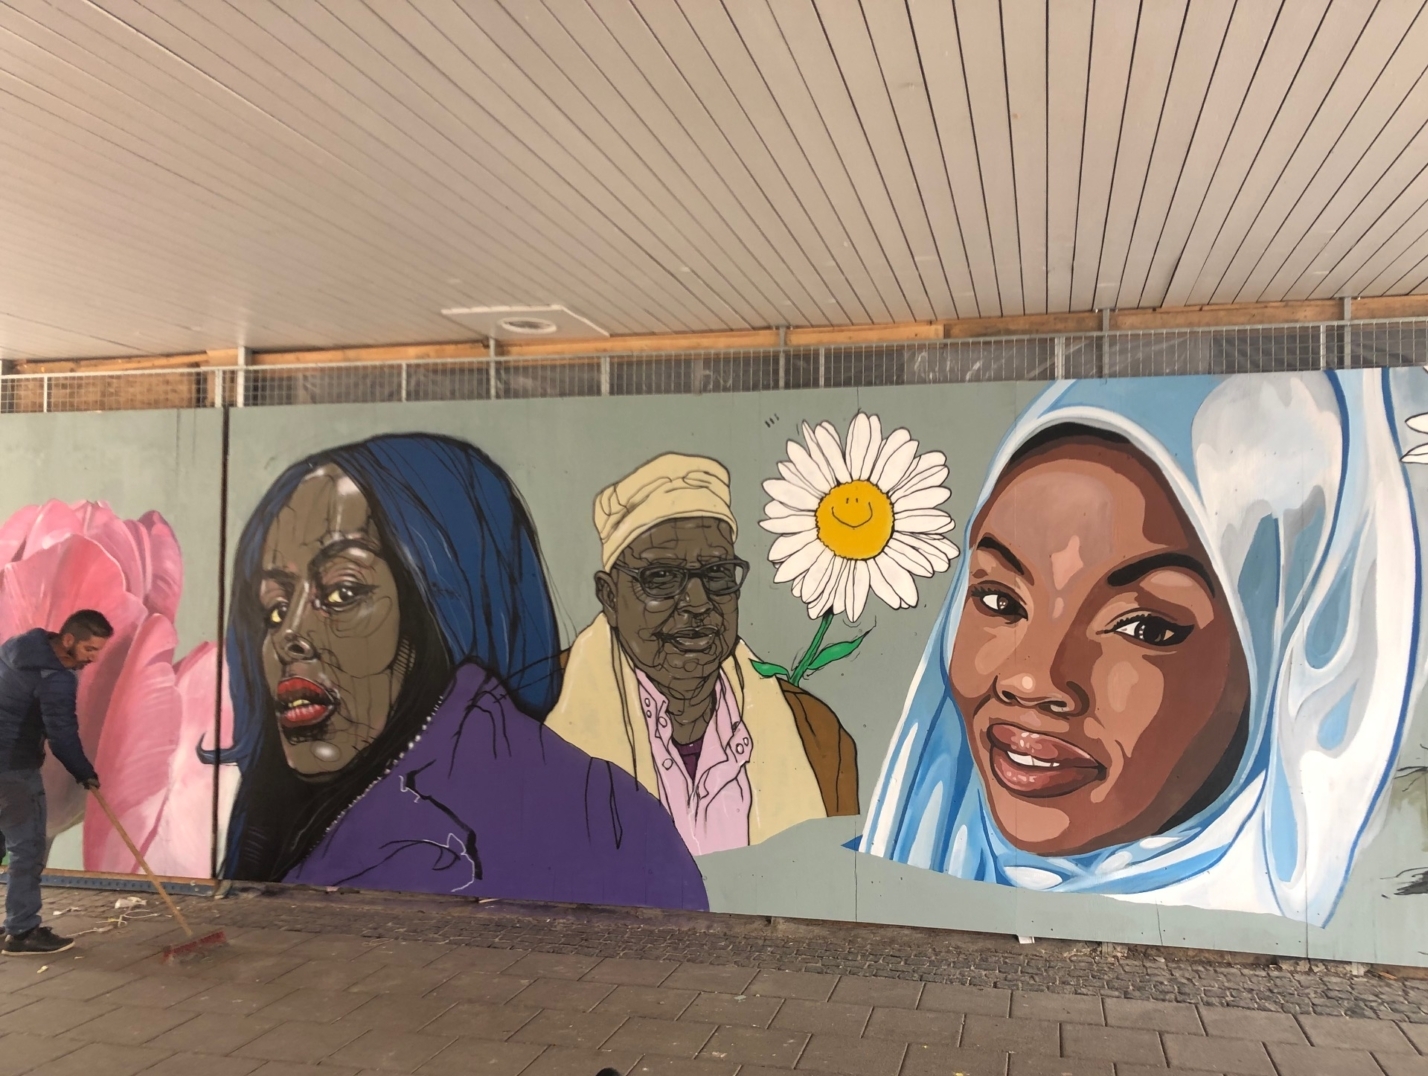 Cherrie, Hadji FFarah och en hijabi målade på väggen.